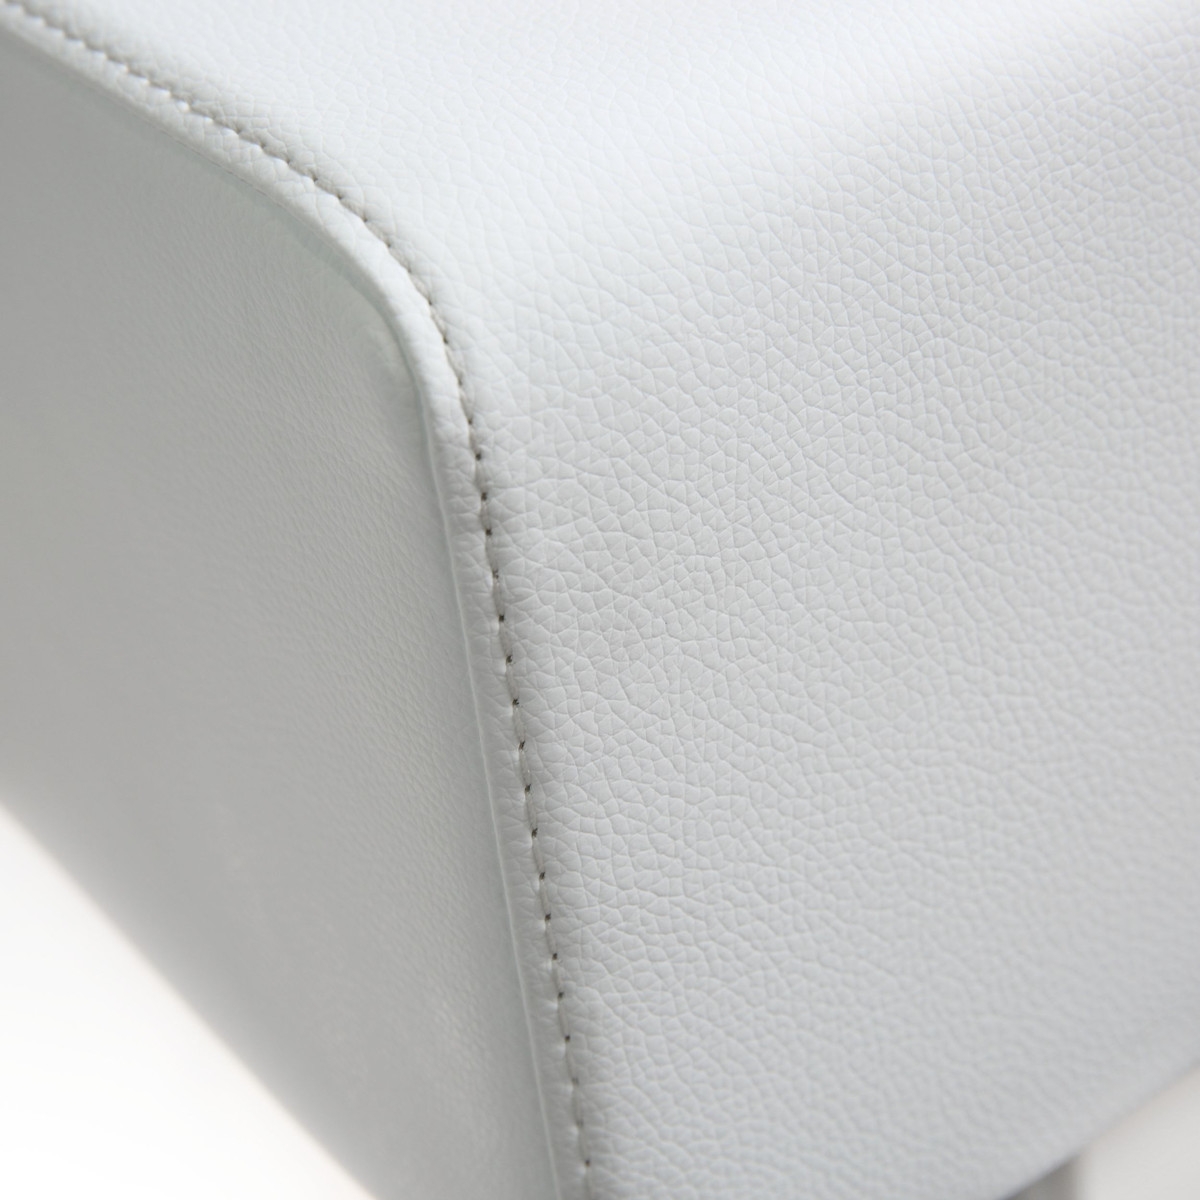 Seville White Stainless Adjustable Barstool - Image 1